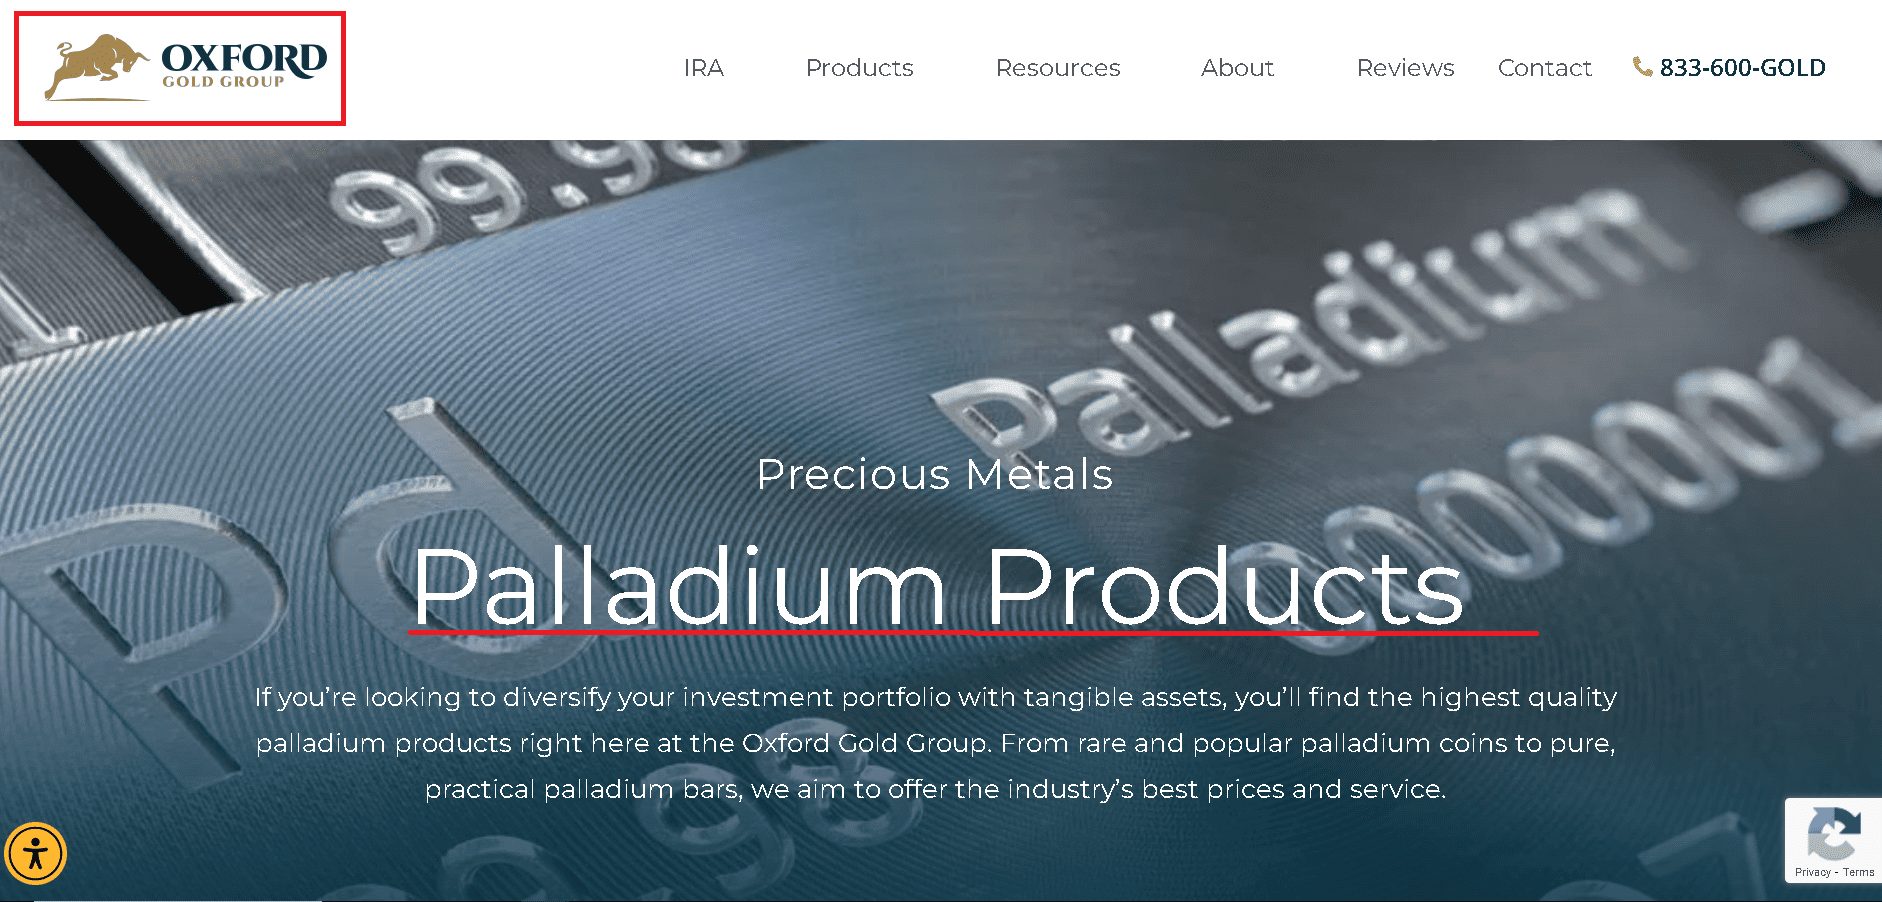 Oxford Gold sell palladium bullion